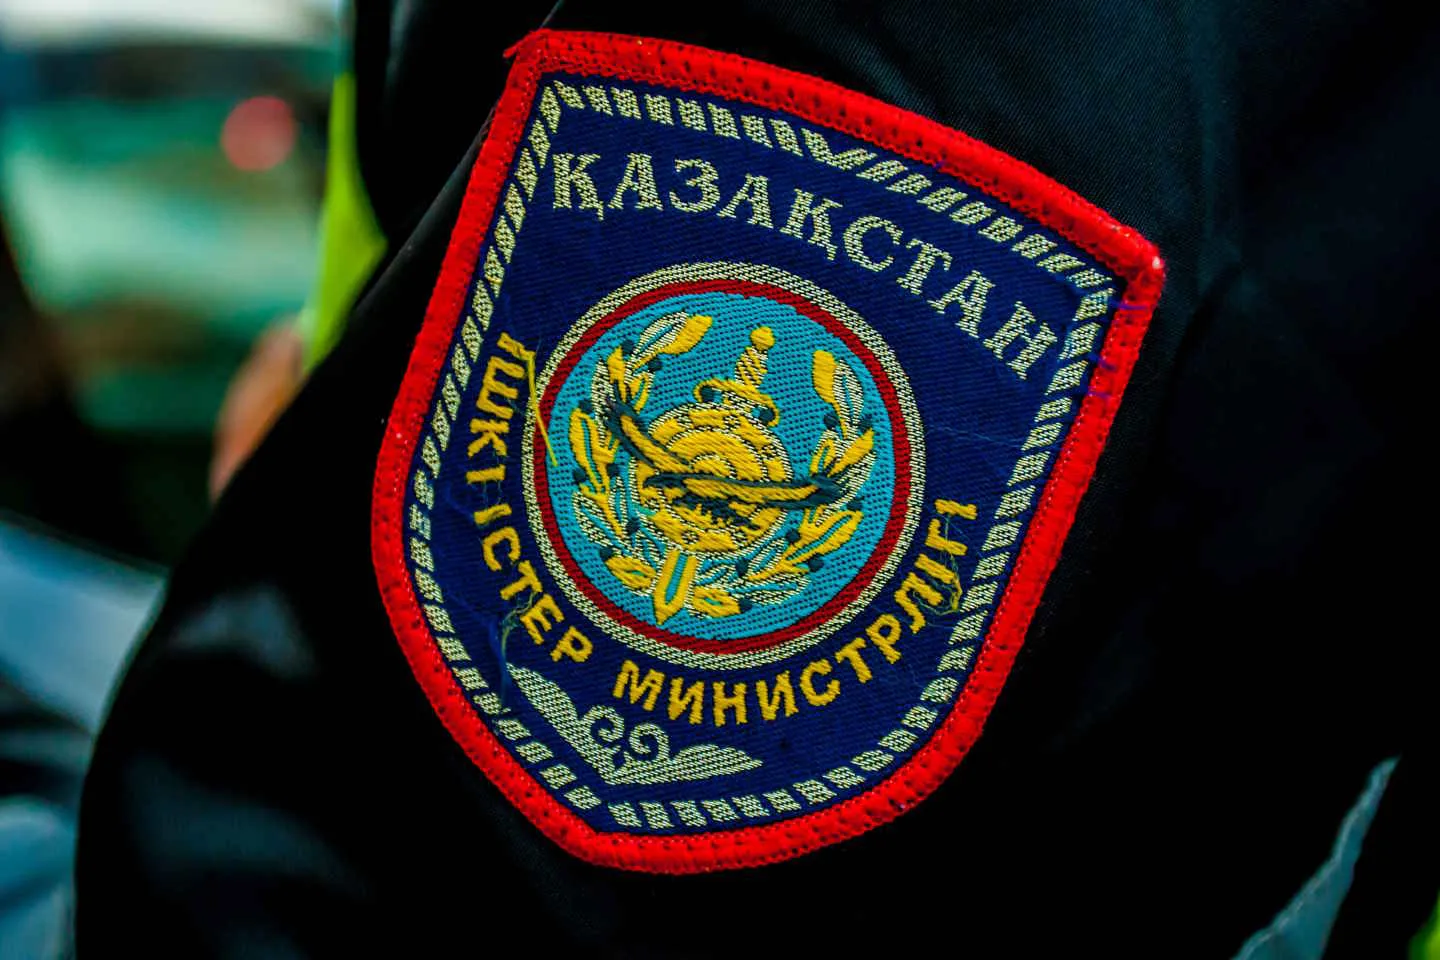 Происшествия в Казахстане и мире / В сети появились сообщения о терактах в школах Павлодара